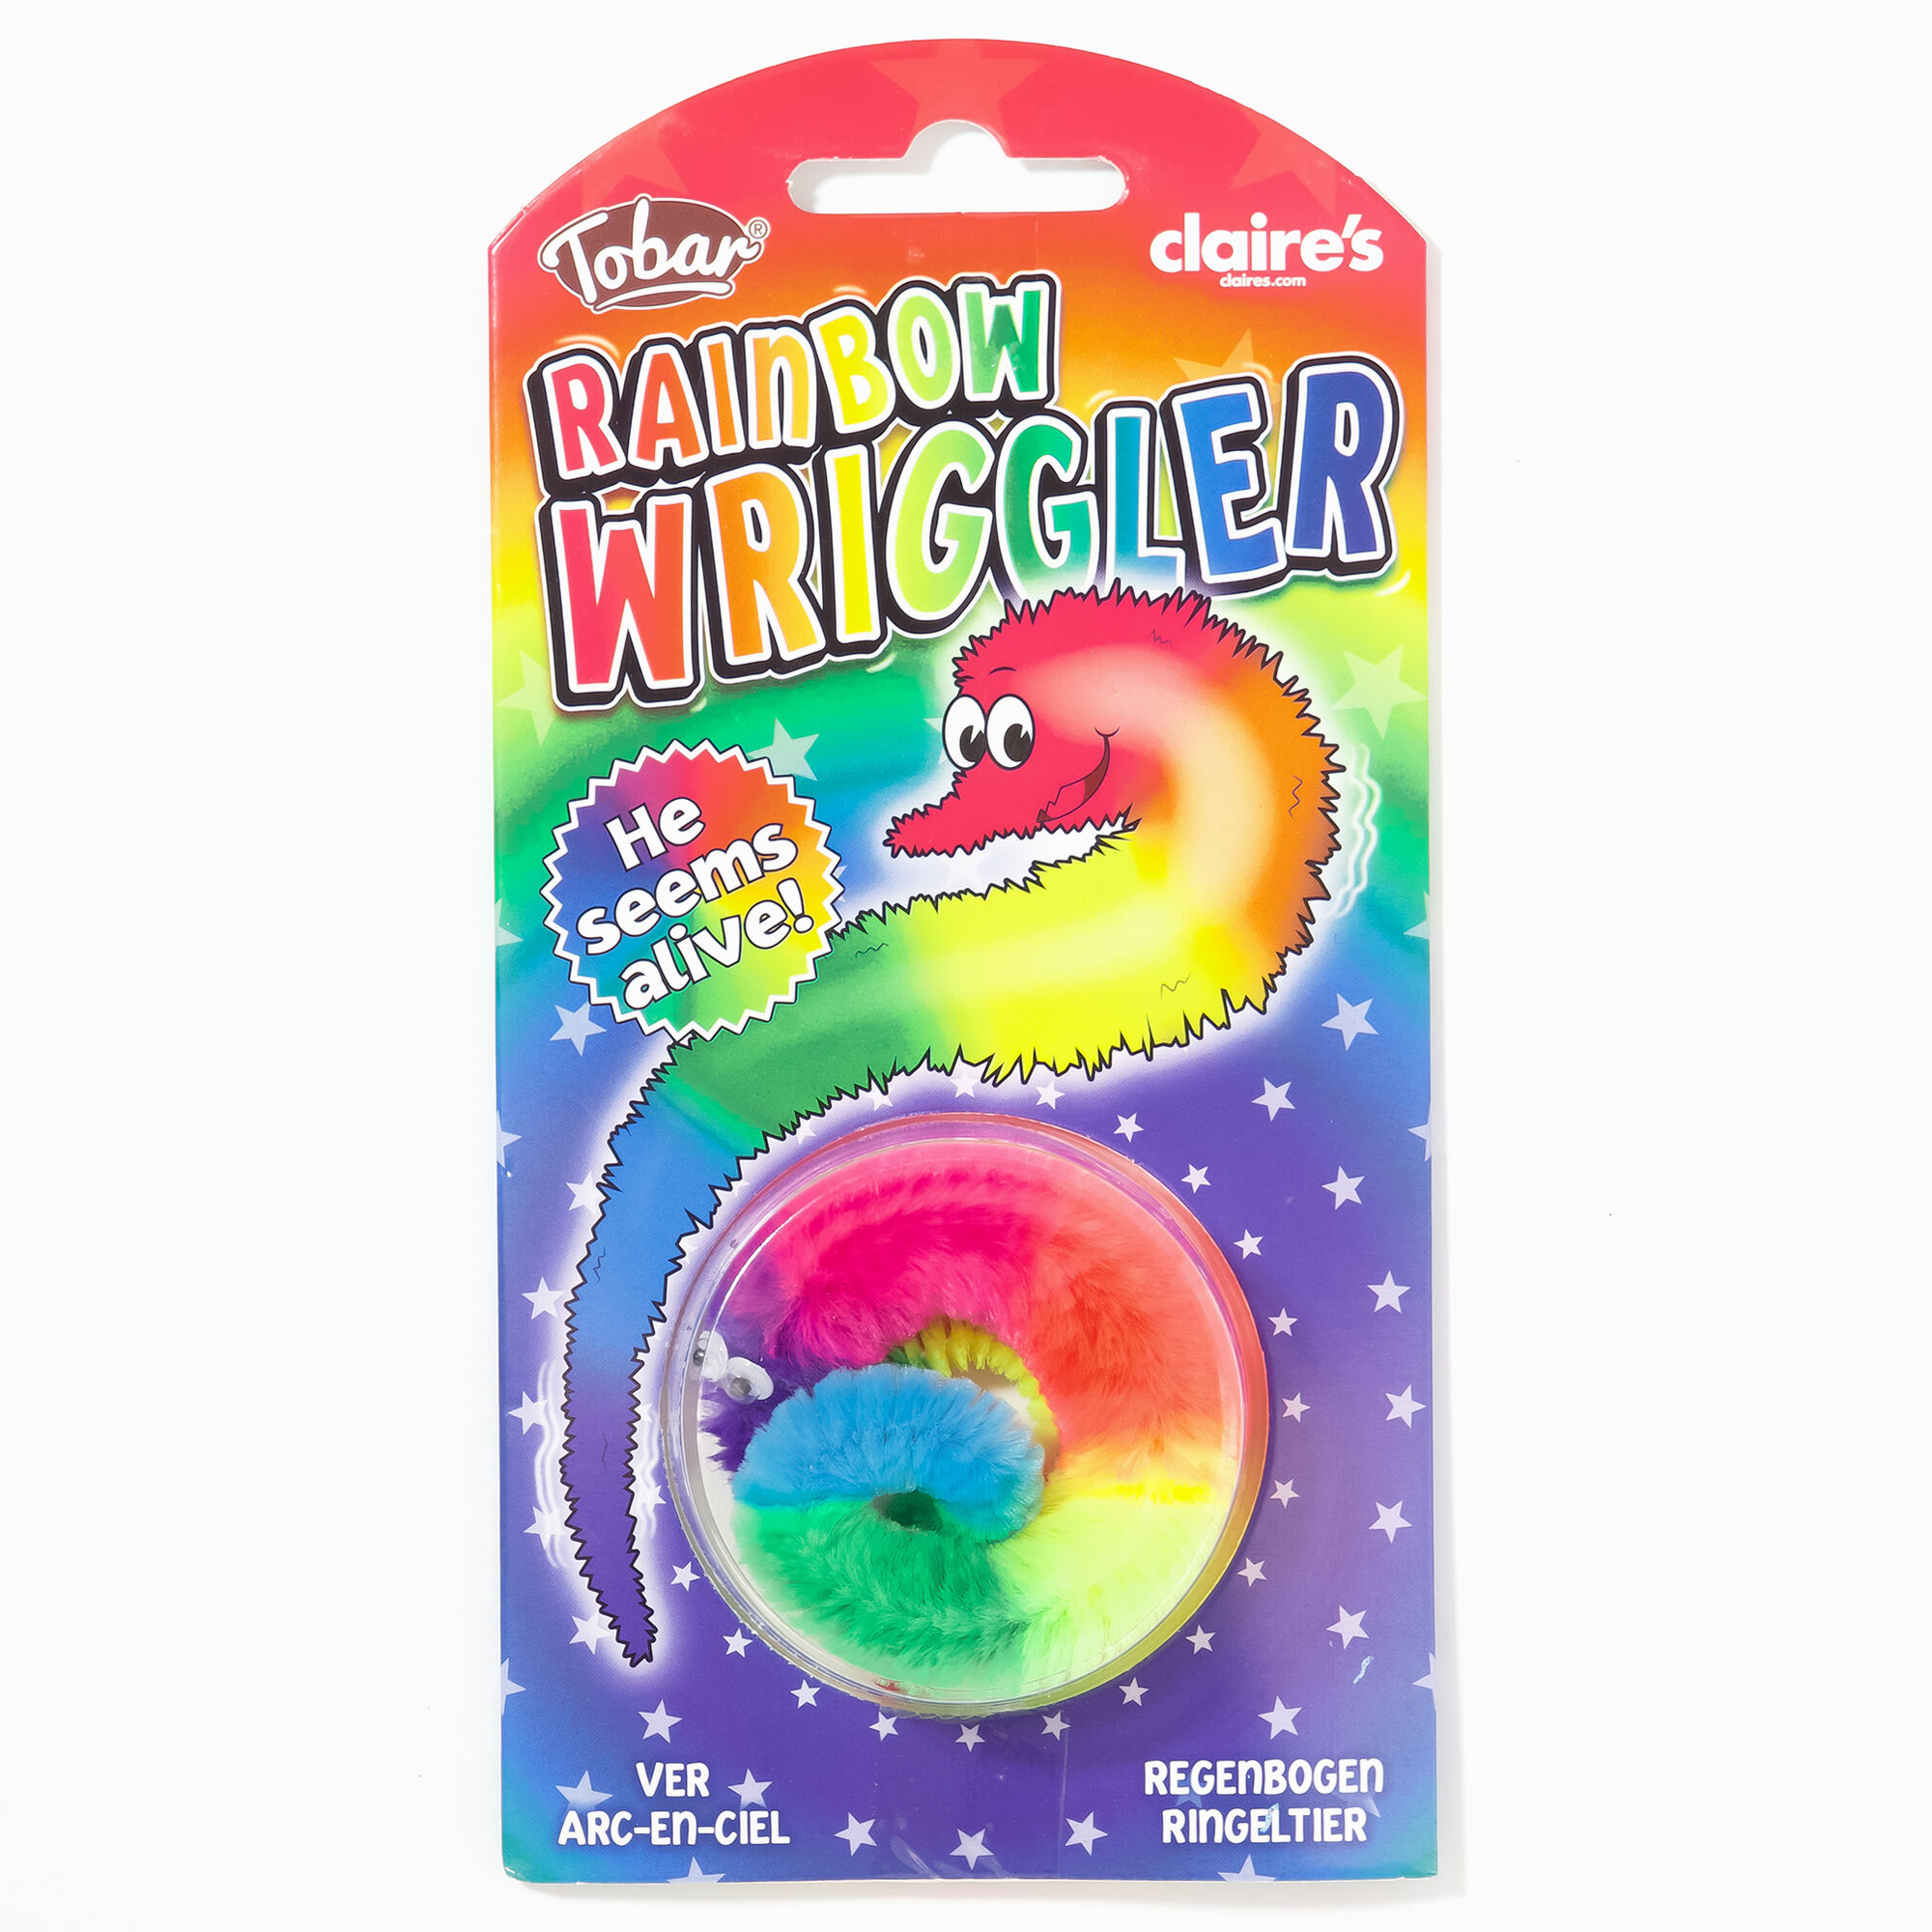 claire's rainbow wriggler fidget toy